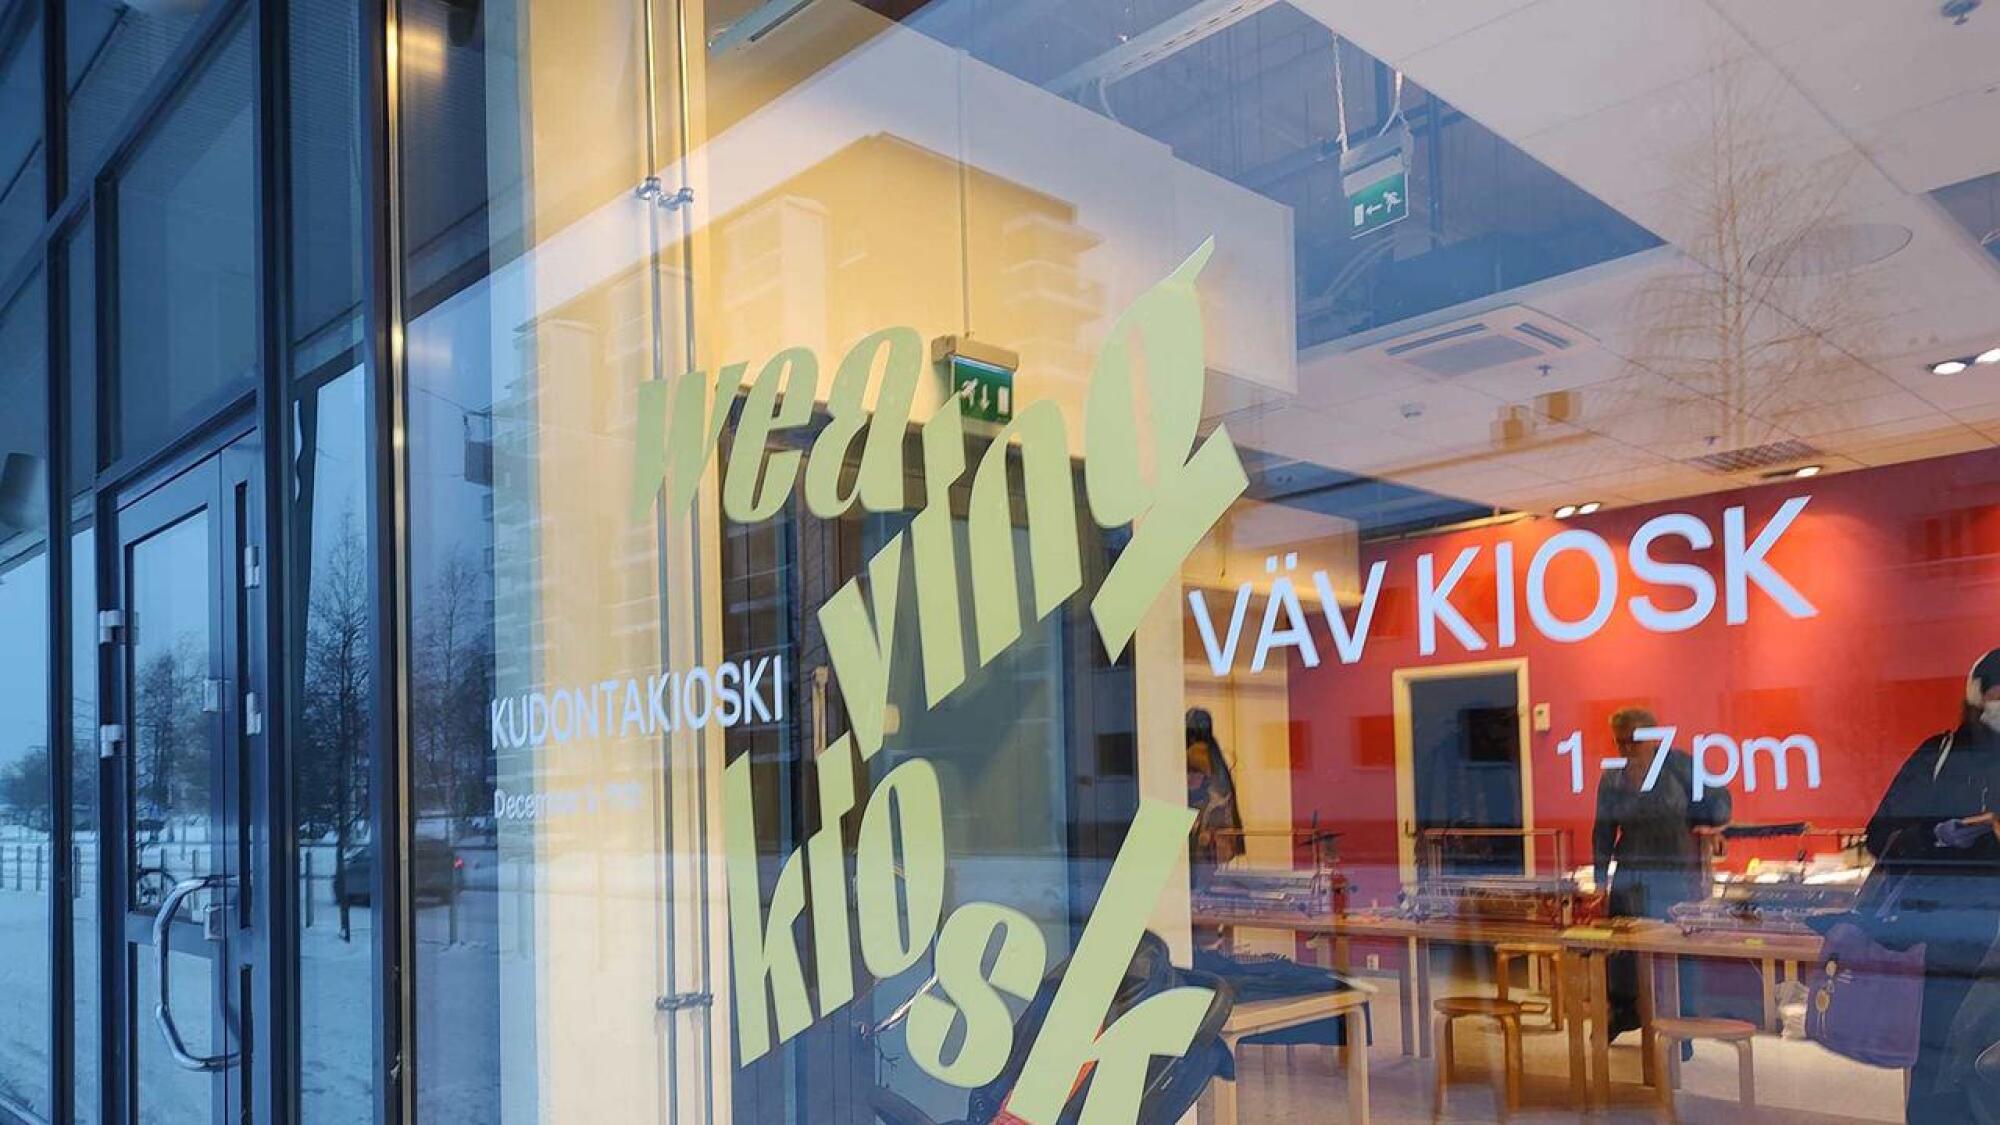 Taidemuseo on tehnyt rajayhteistyötä myös Pohjois-Ruotsin Luleå biennalen kanssa, kun se  toi osana biennalea Tornioon viikon ajaksi tanskalaisen tekstiilitaiteilija Rosa Tolnov Clausenin Kudontakioskin kauppakeskuksen katutasoon. Kioskissa vieraili yli 100 kutojaa viikon aikana. 